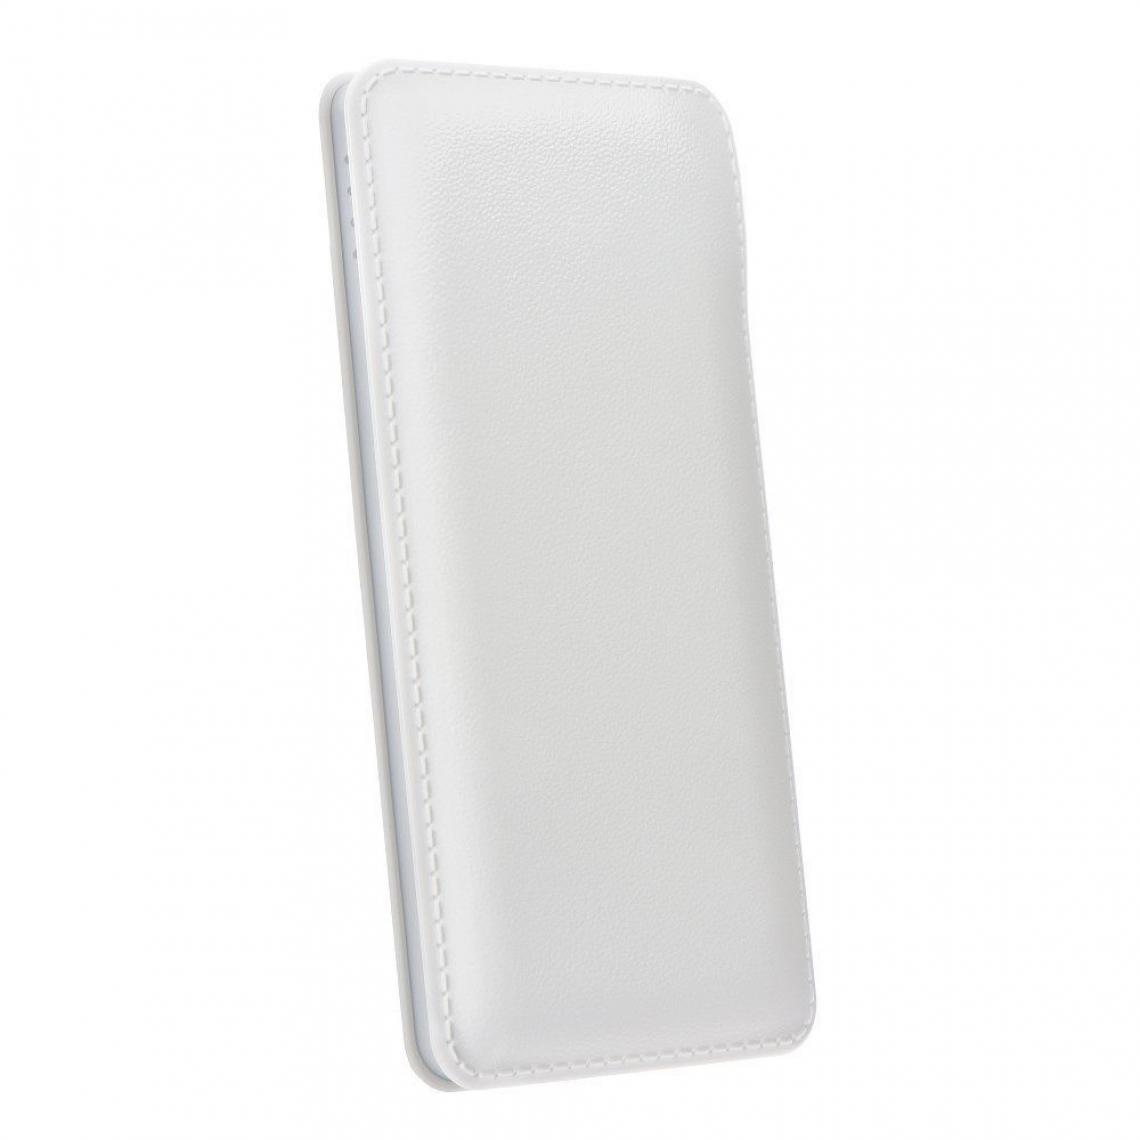 Ozzzo - Chargeur batterie externe 30000 mAh powerbank ozzzo blanc pour Asus ZenPad 10 Z300CNL - Autres accessoires smartphone